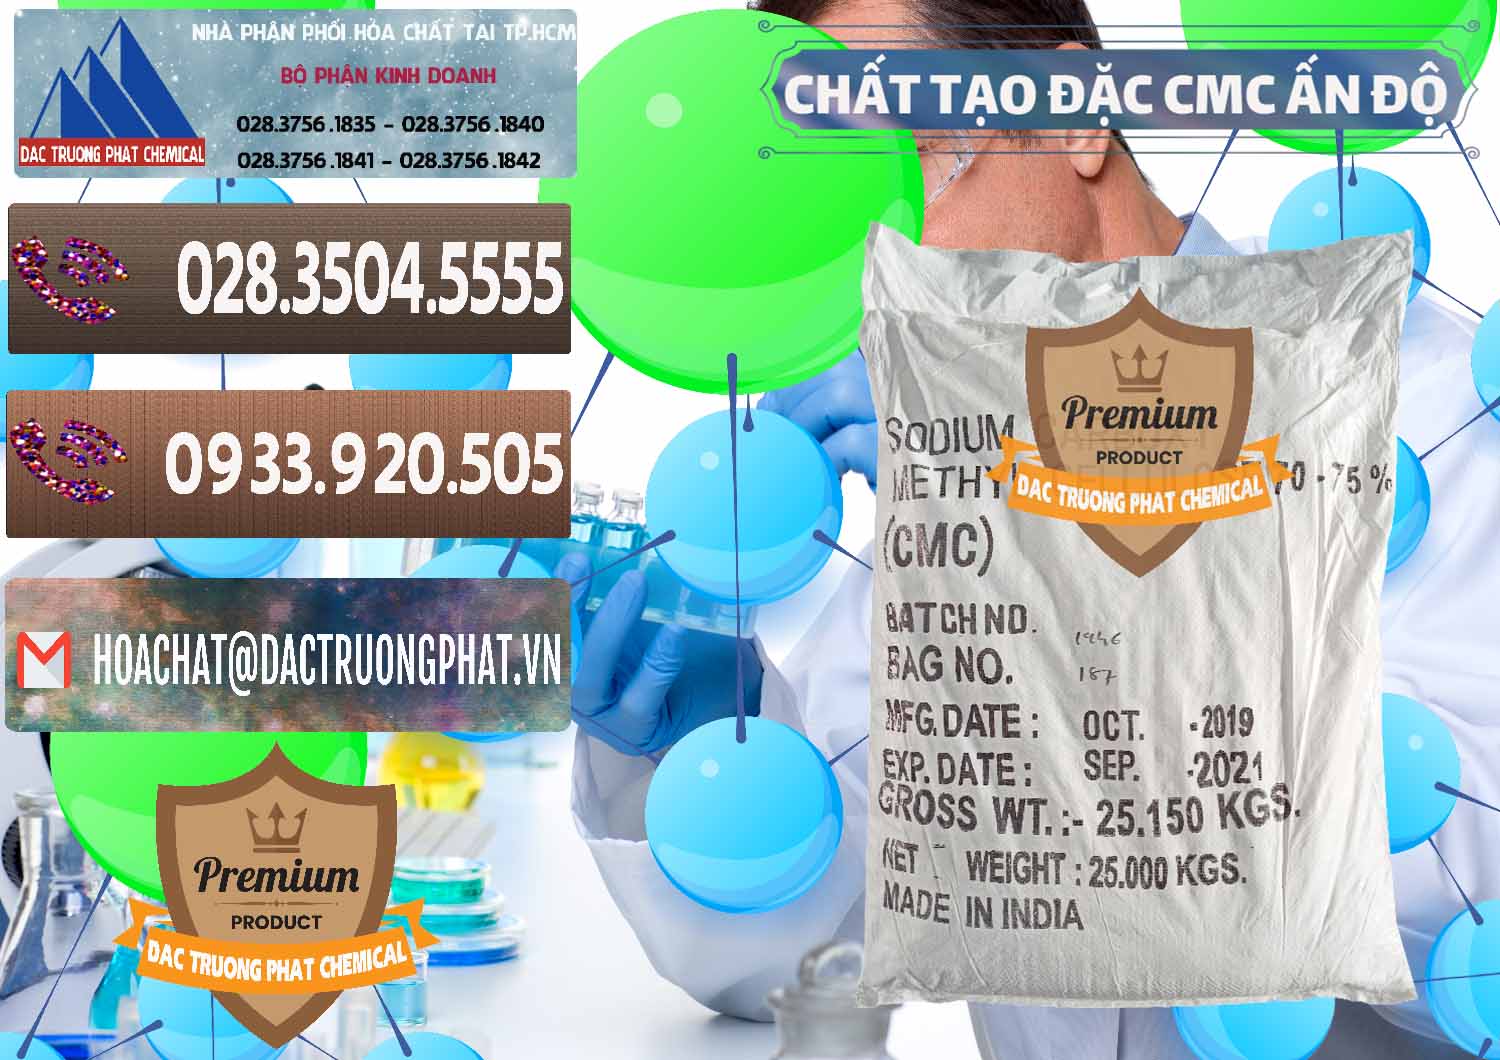 Nơi chuyên kinh doanh & bán Chất Tạo Đặc CMC - Carboxyl Methyl Cellulose Ấn Độ India - 0044 - Nhà phân phối & cung ứng hóa chất tại TP.HCM - hoachatviet.net